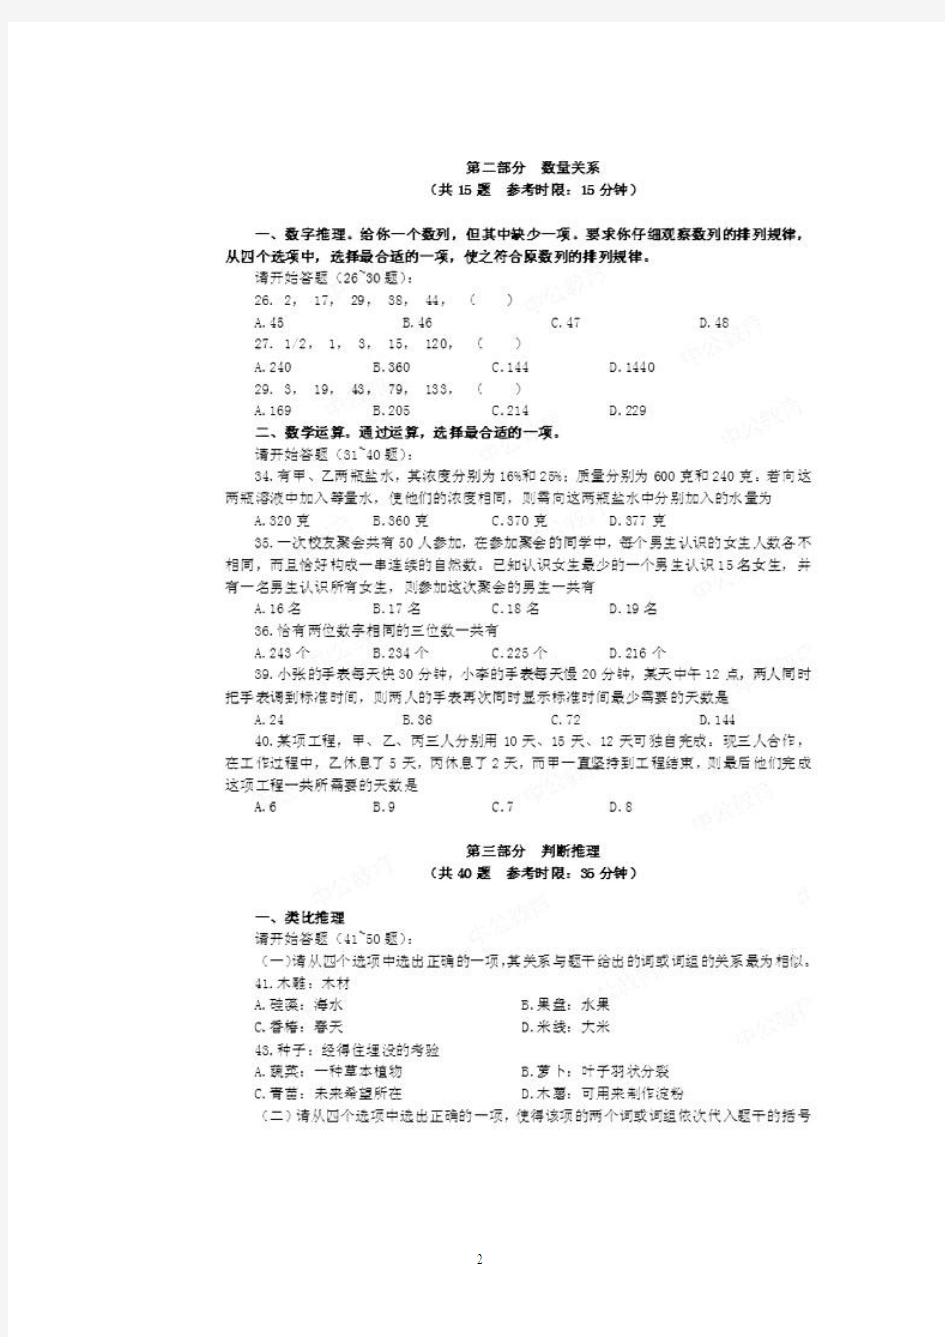 2014年江苏省公务员考试《行测》(B类)真题及答案